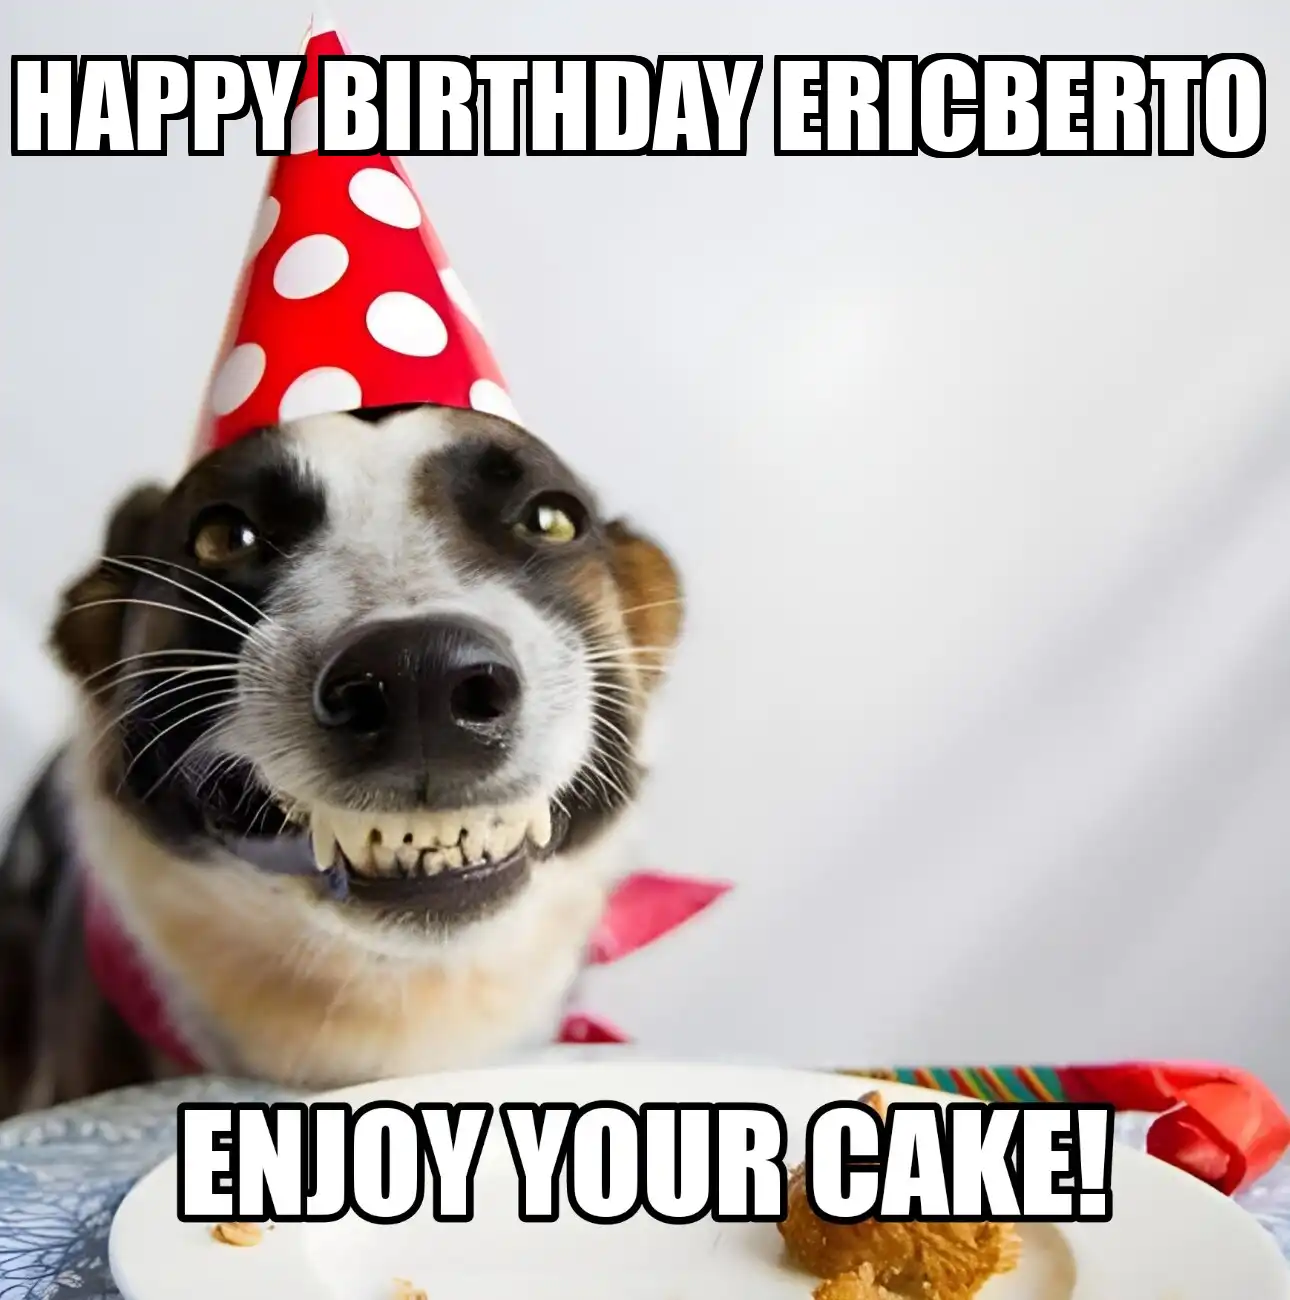 Happy Birthday Ericberto Enjoy Your Cake Dog Meme